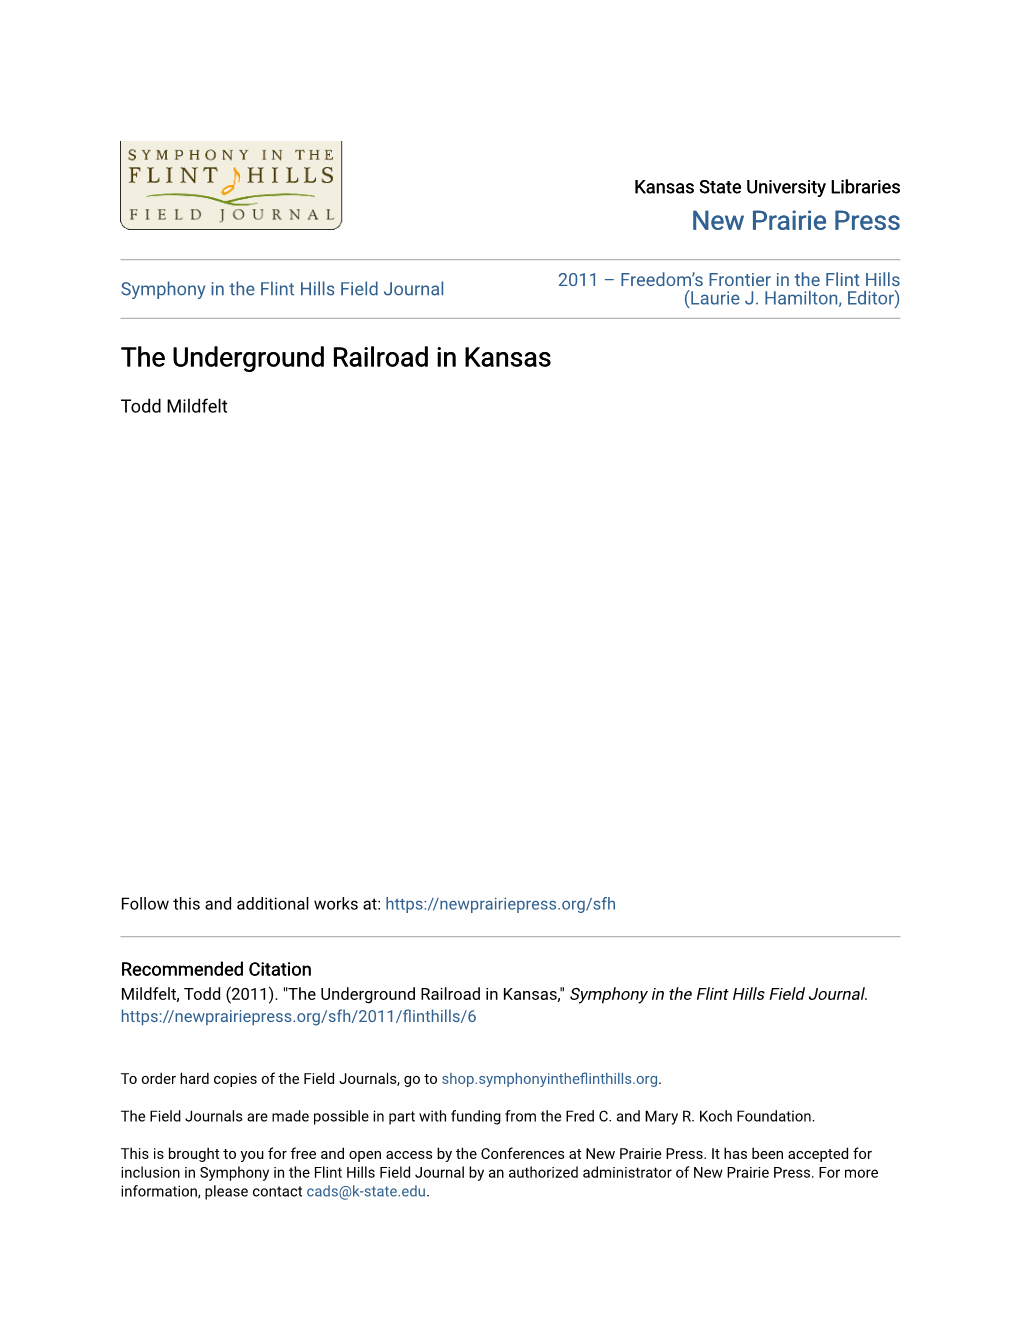 The Underground Railroad in Kansas